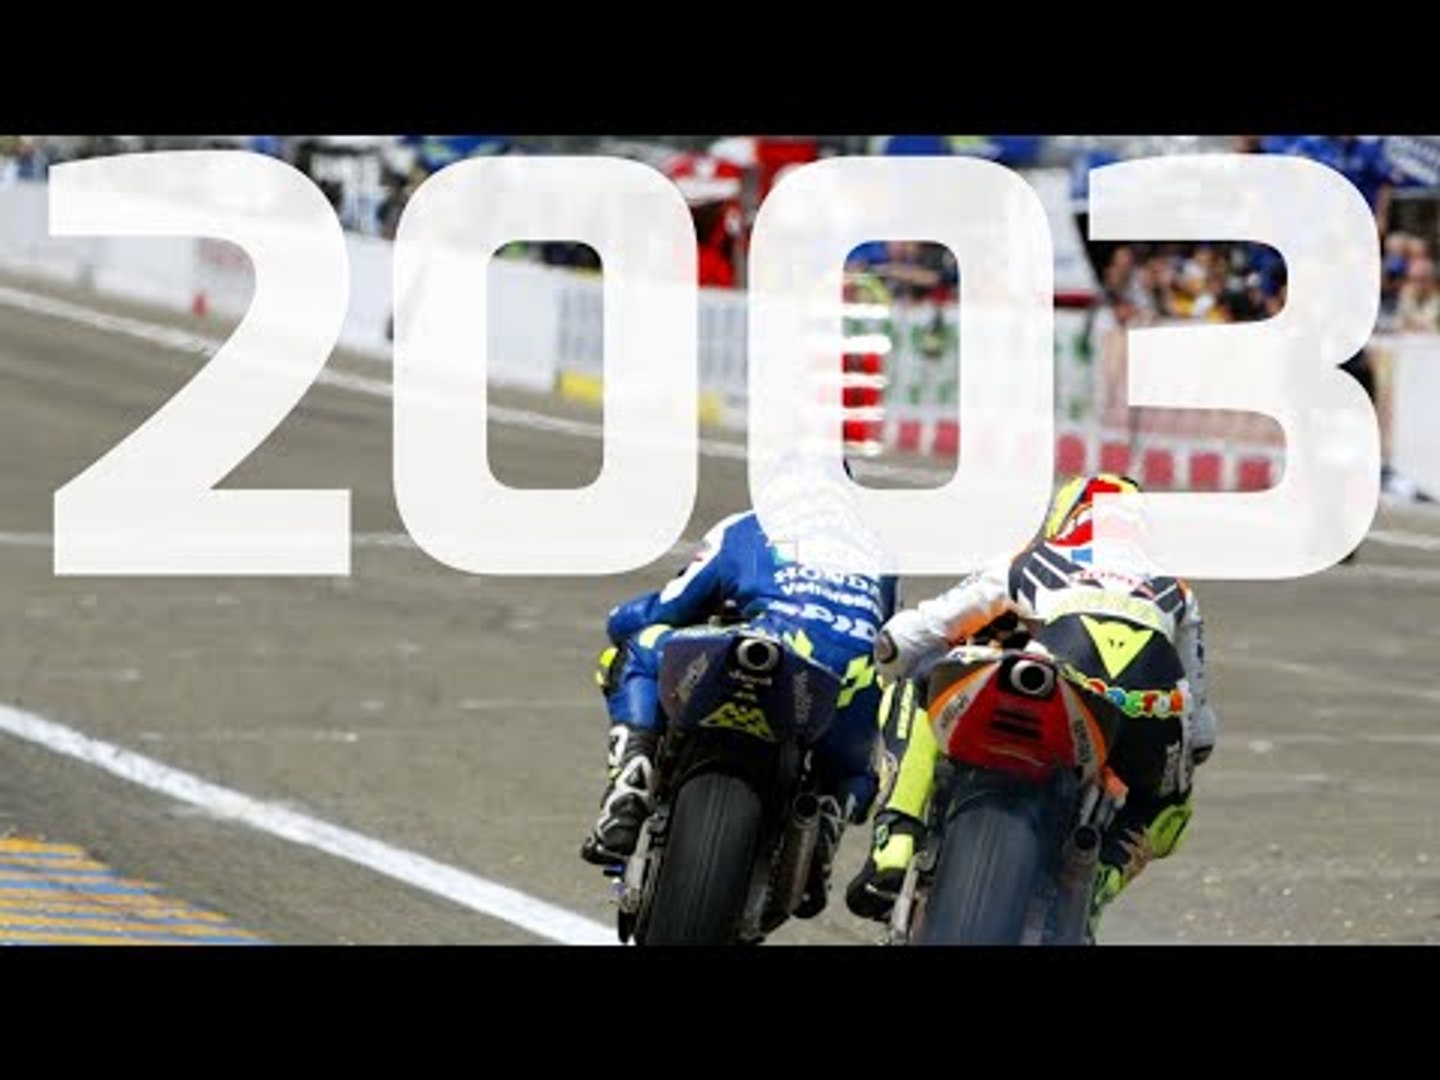 Le Mans MotoGP - 5 unforgettable Moments - video Dailymotion